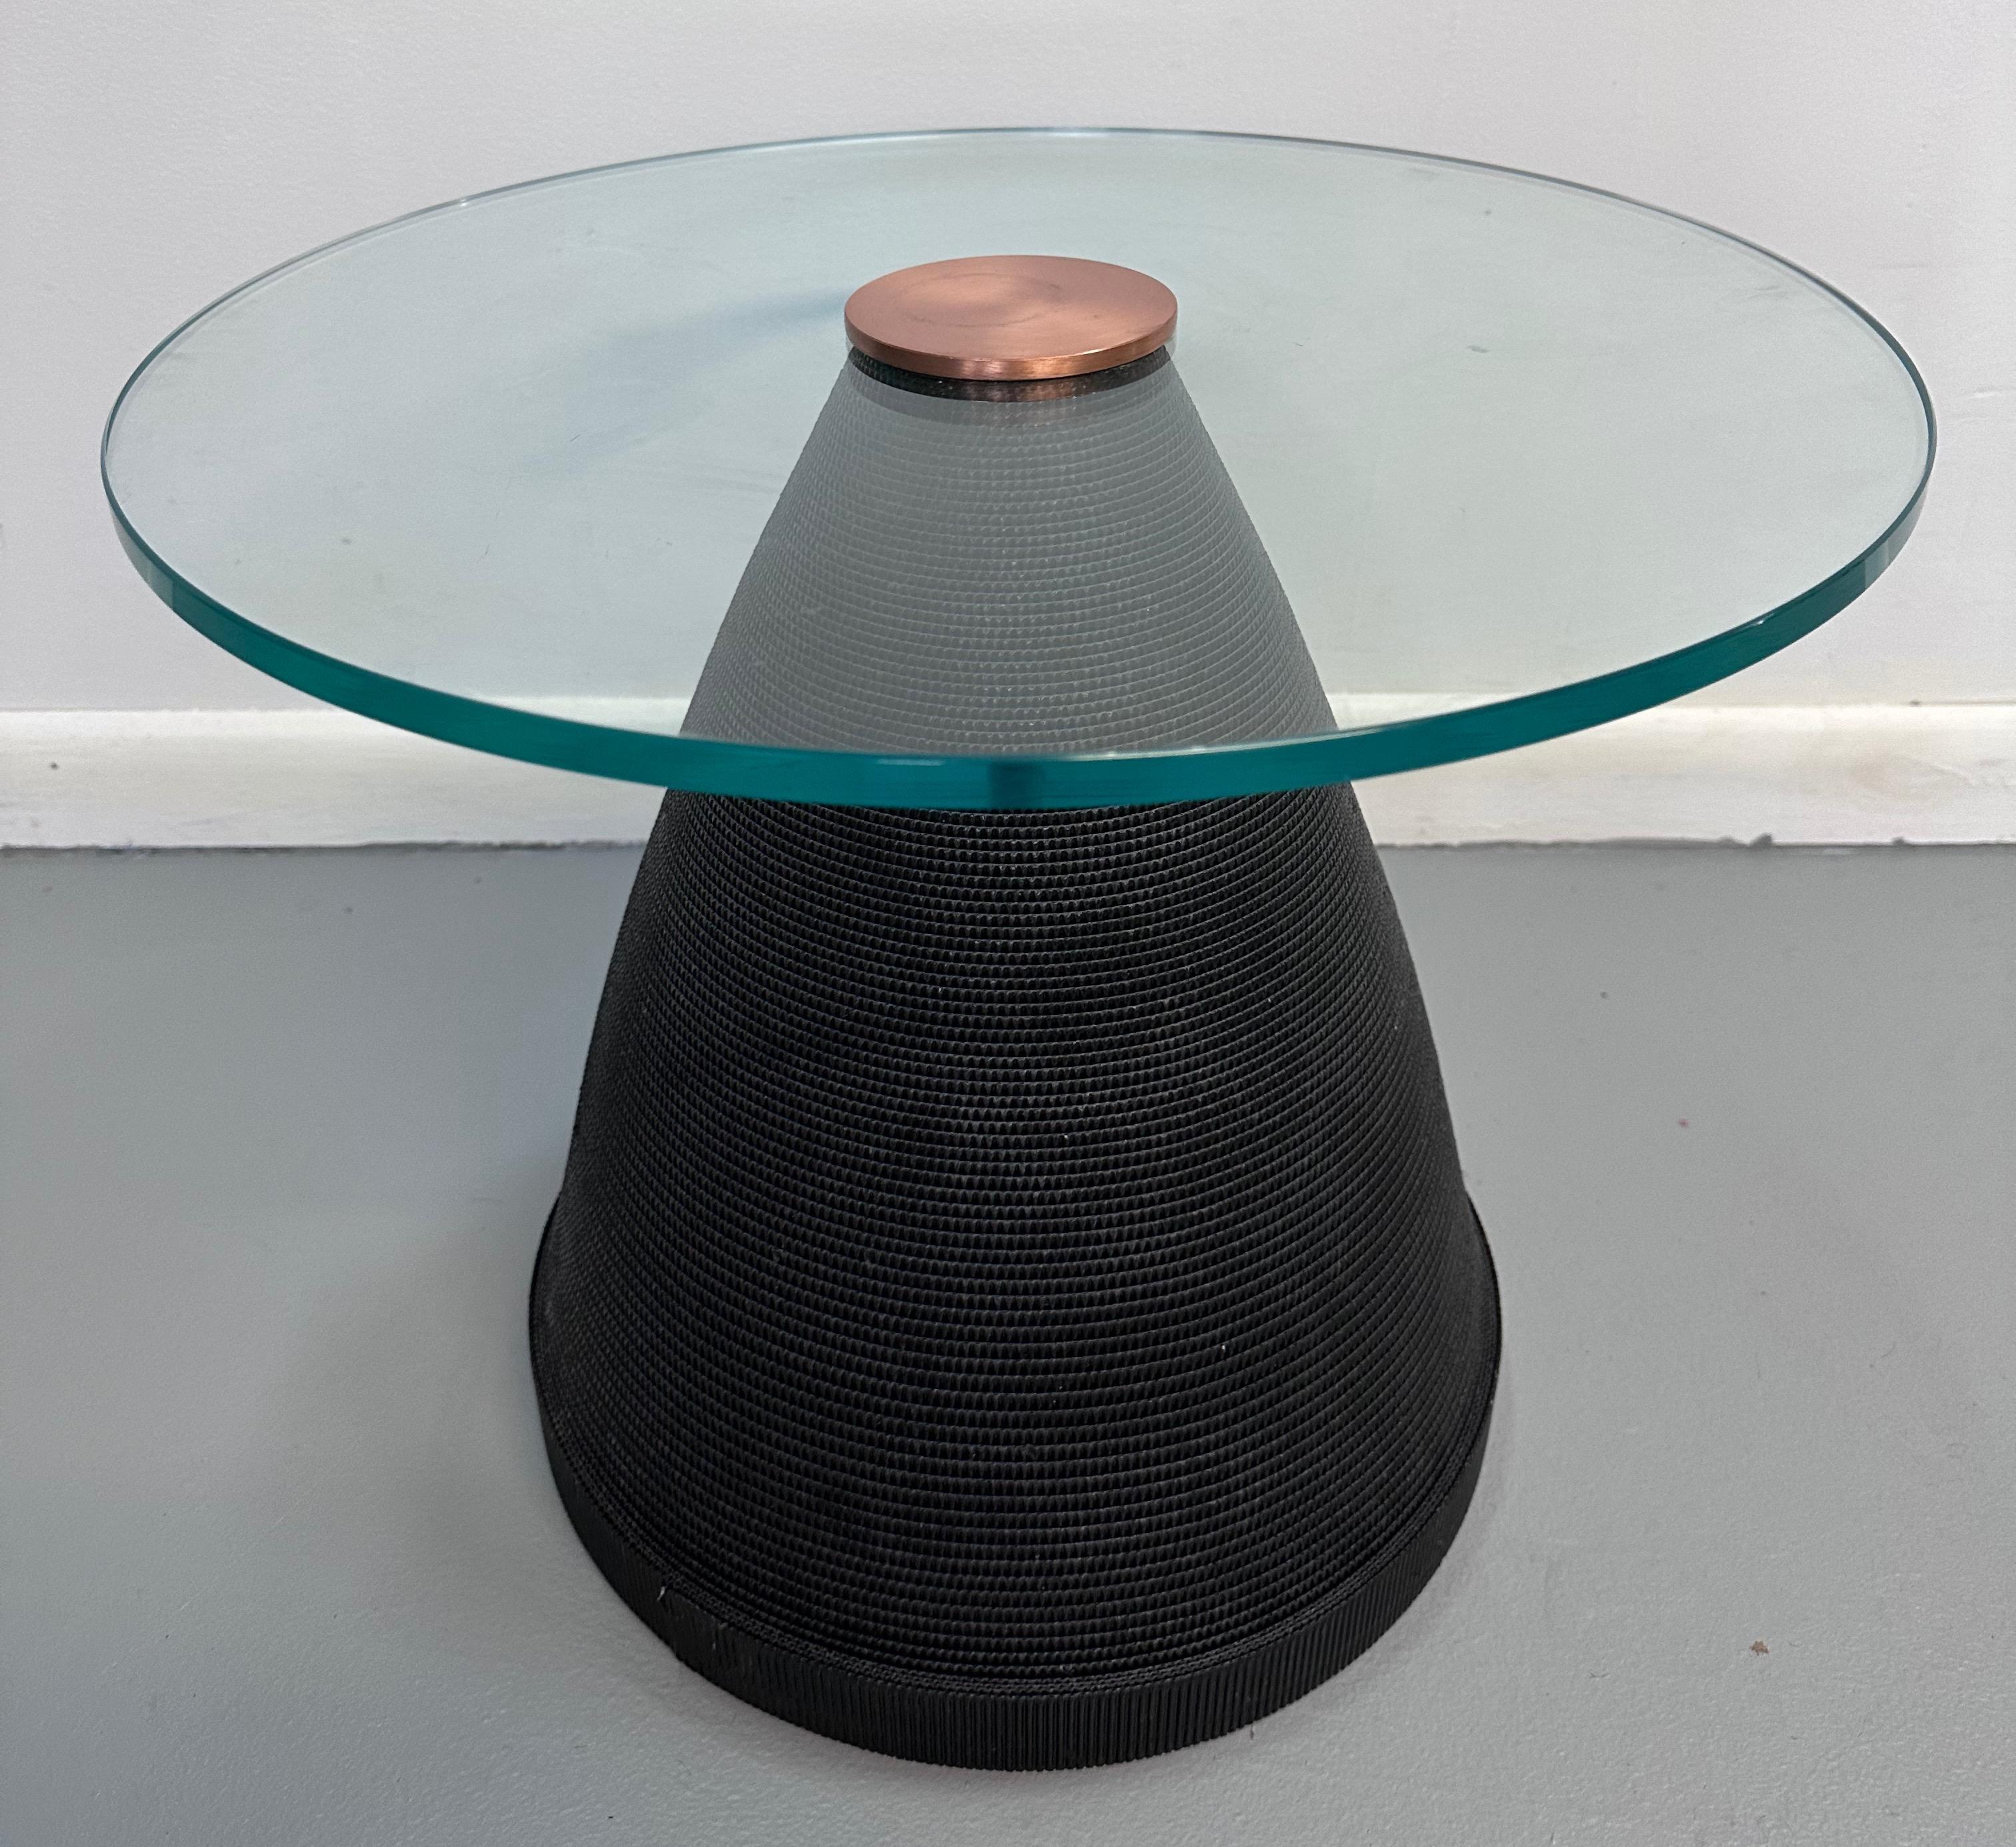 Ein wundervoller postmoderner Beistelltisch aus schwarzer Wellpappe, umhüllt von einem sich verjüngenden Kegel, gekrönt von einer Glasplatte mit einem Durchmesser von 20 Zoll und gekrönt von einer schönen Messingscheibe, die den Tisch an seinem